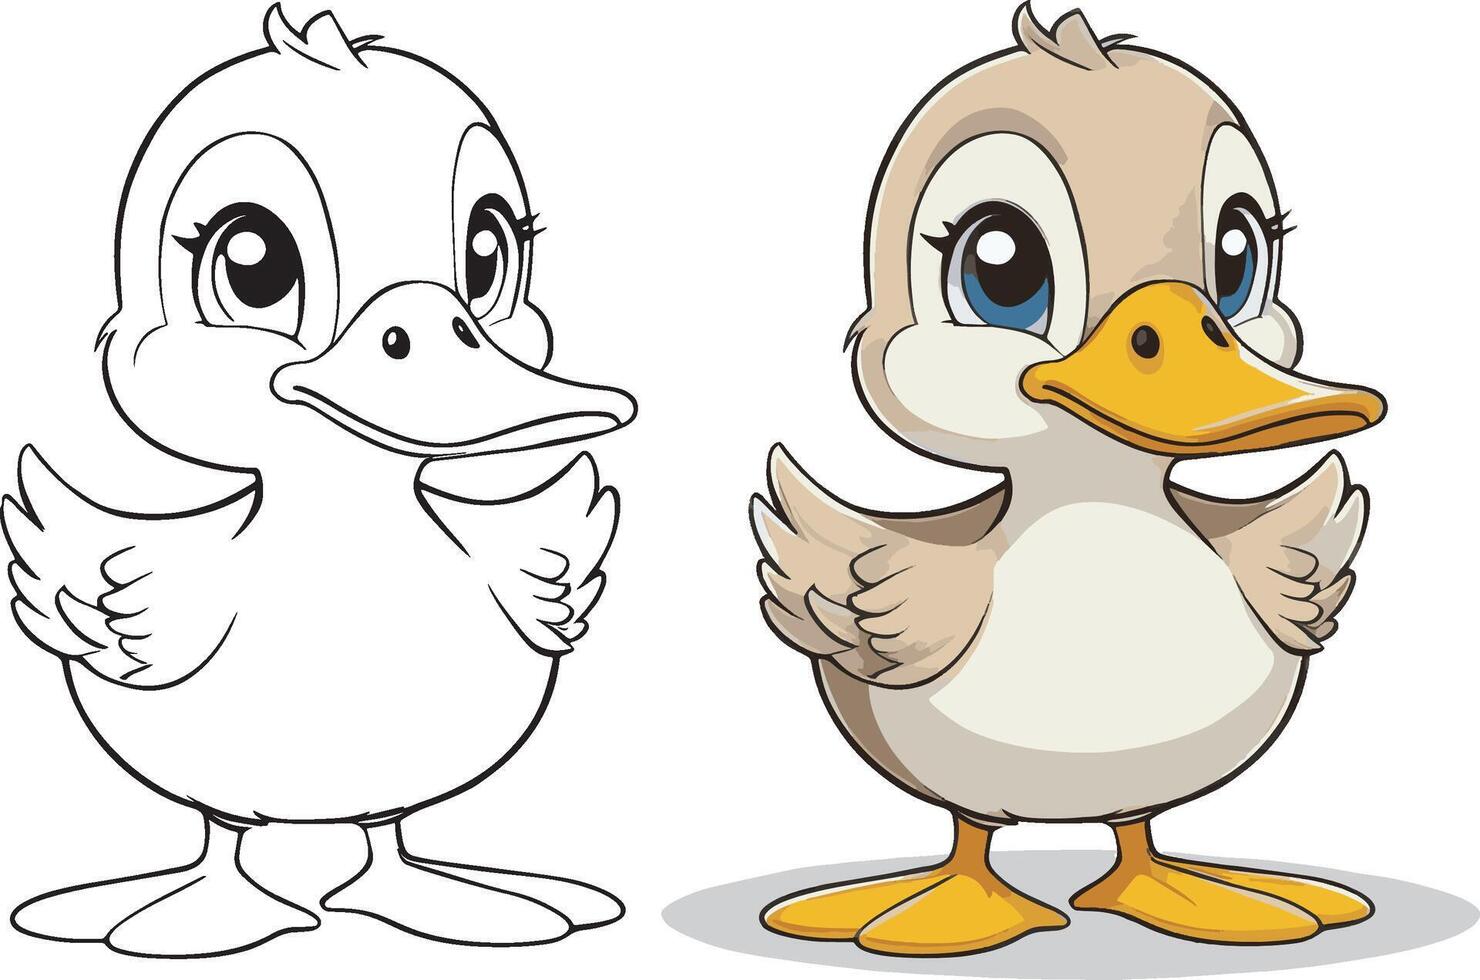 süß Karikatur Charakter Ente mit Linien und bunt Färbung Seiten. vektor